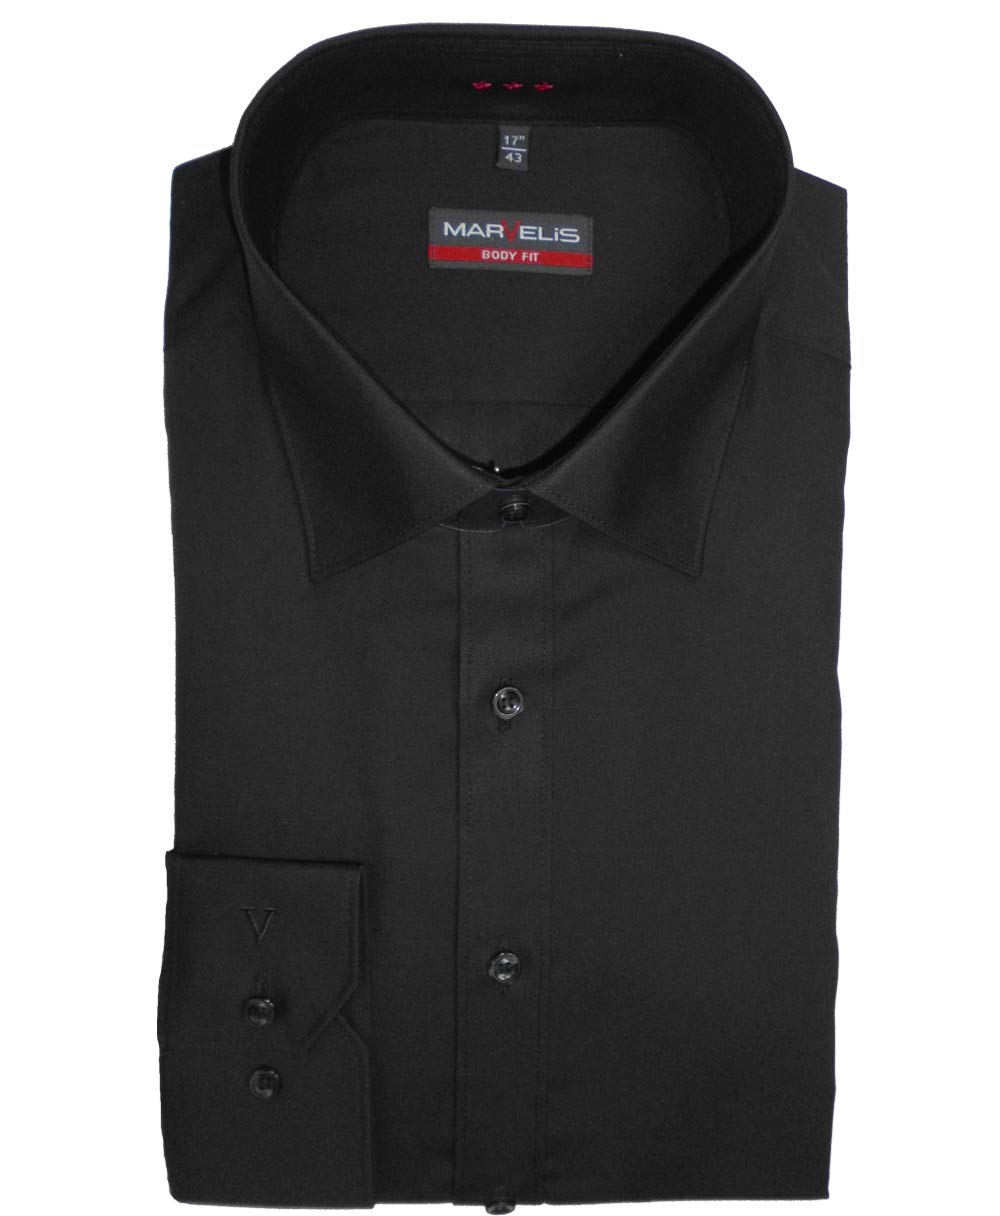 Marvelis Herren Businesshemd Body Fit, extralang, Kent-Kragen, Uni Popeline, 100% Baumwolle, schwarz 68, 41